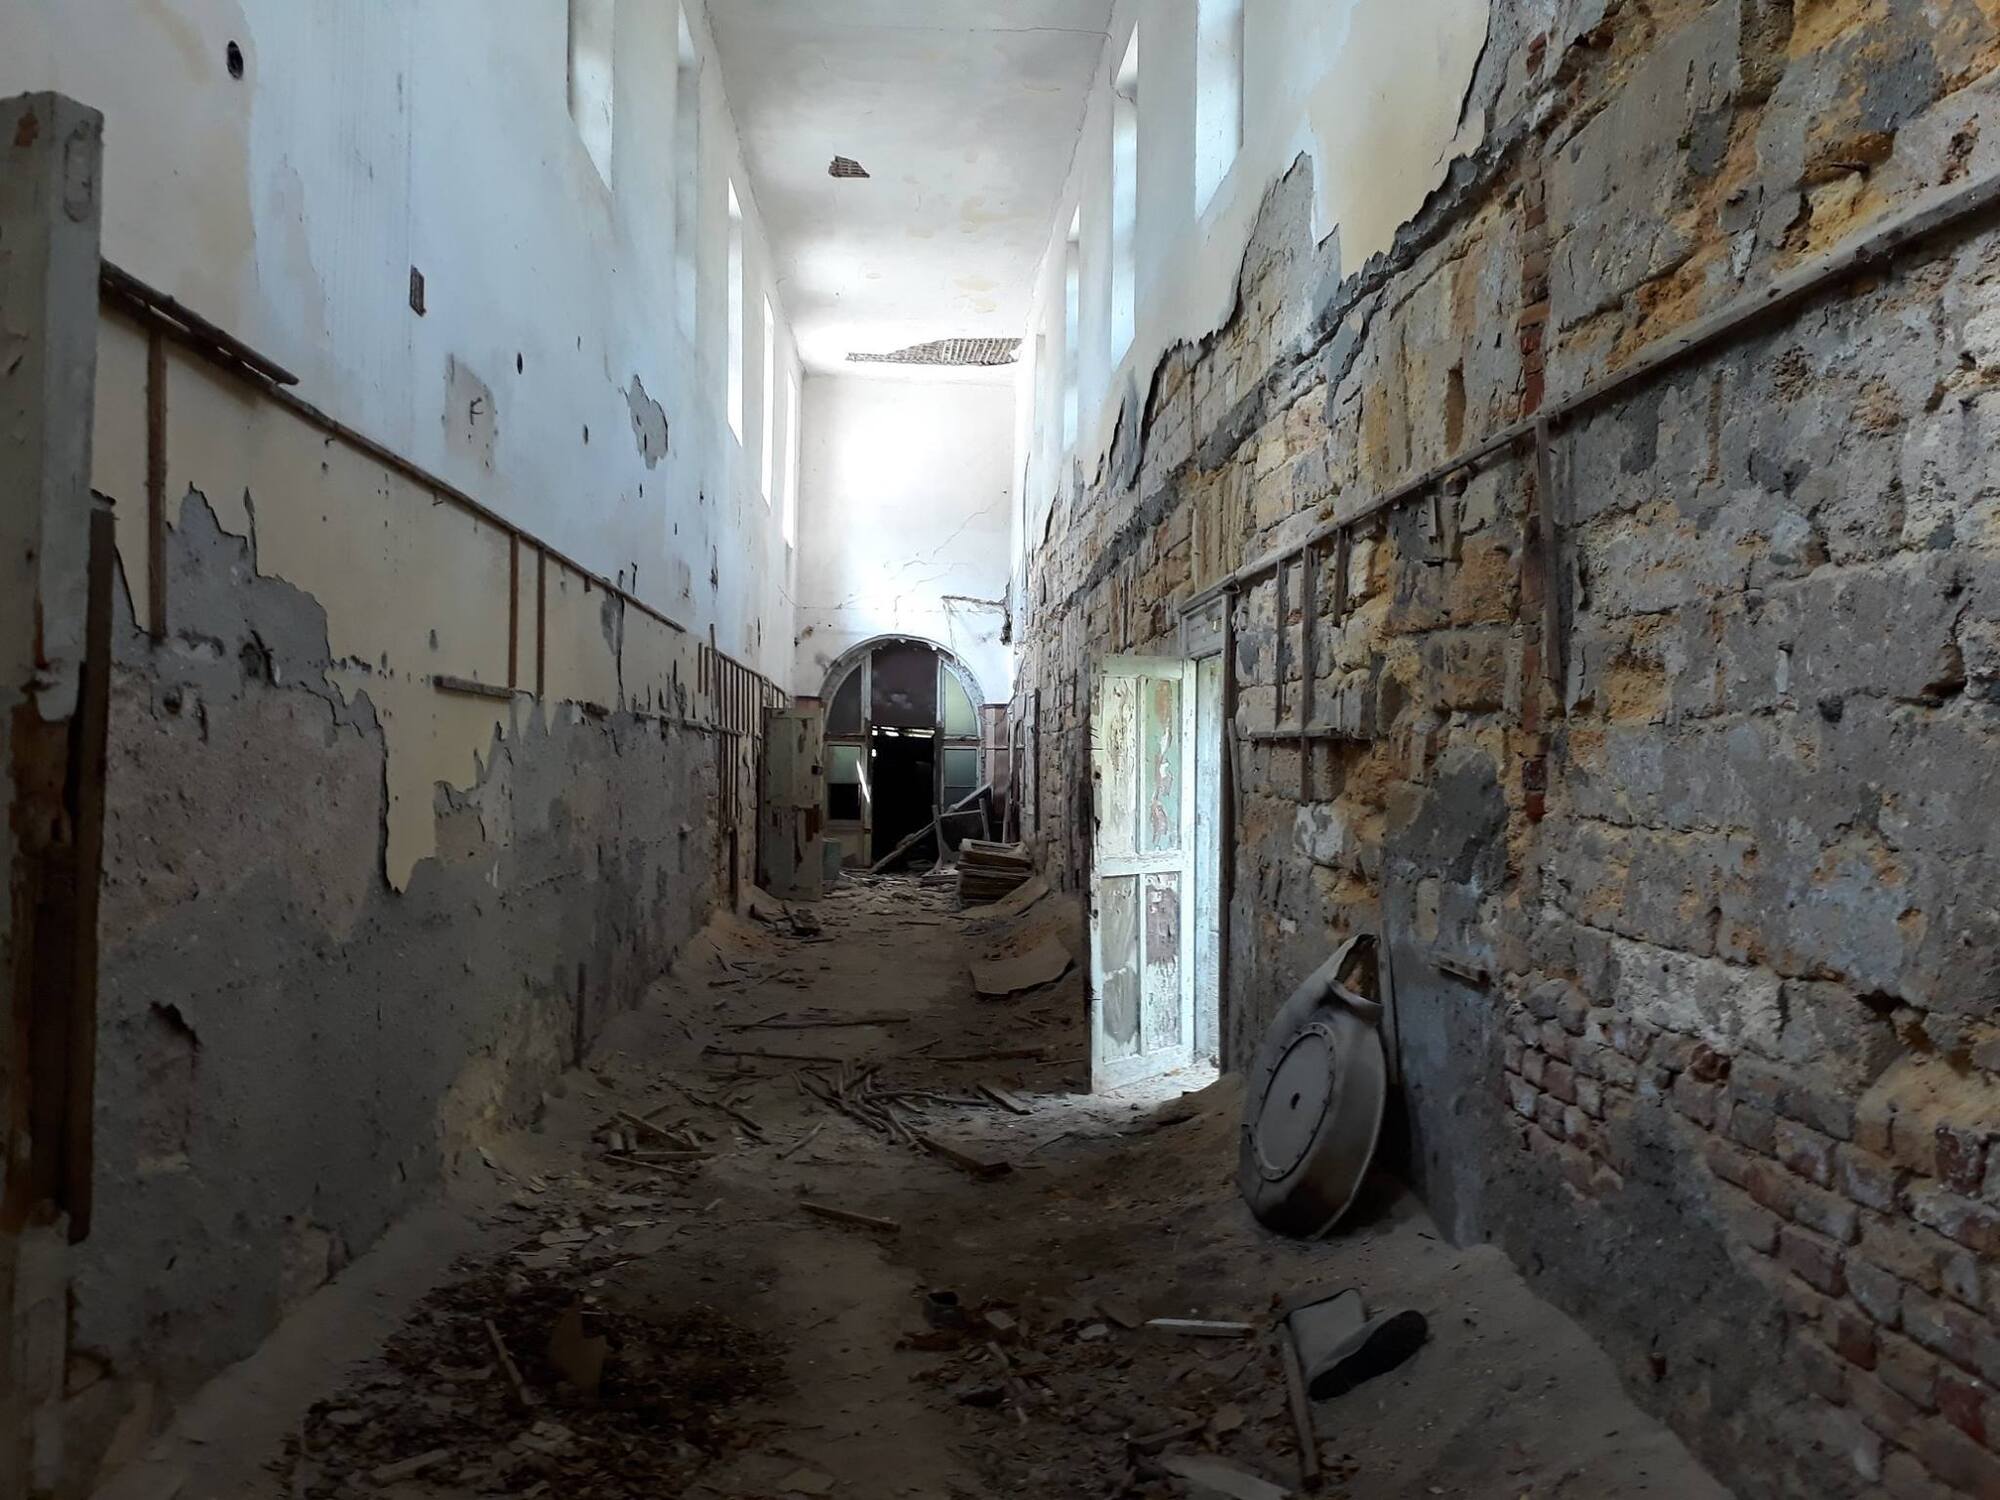 Разруха и голоса людей: во что превратилась лечебница в Куяльнике (фото)